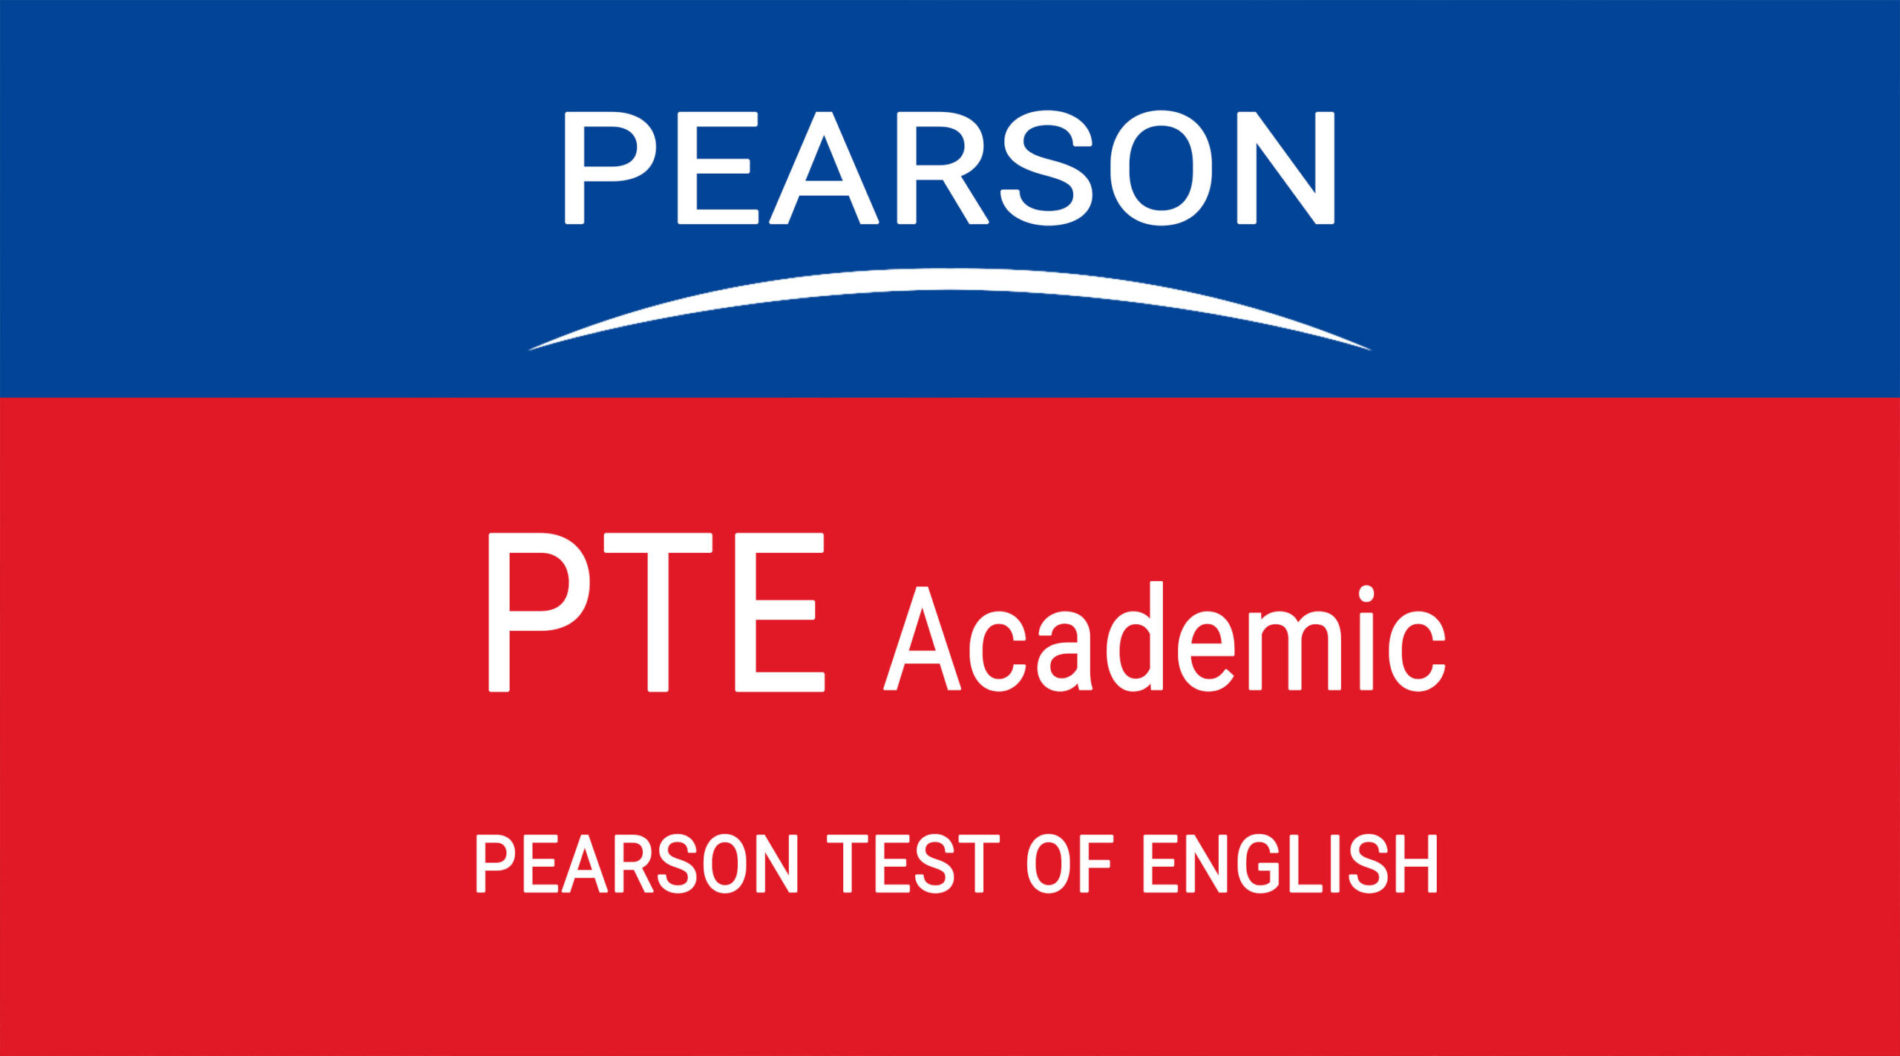 Chứng chỉ ngoại ngữ PTE cũng là một điều kiện bắt buộc về ngoại ngữ dành cho sinh viên du học nghề tại Úc